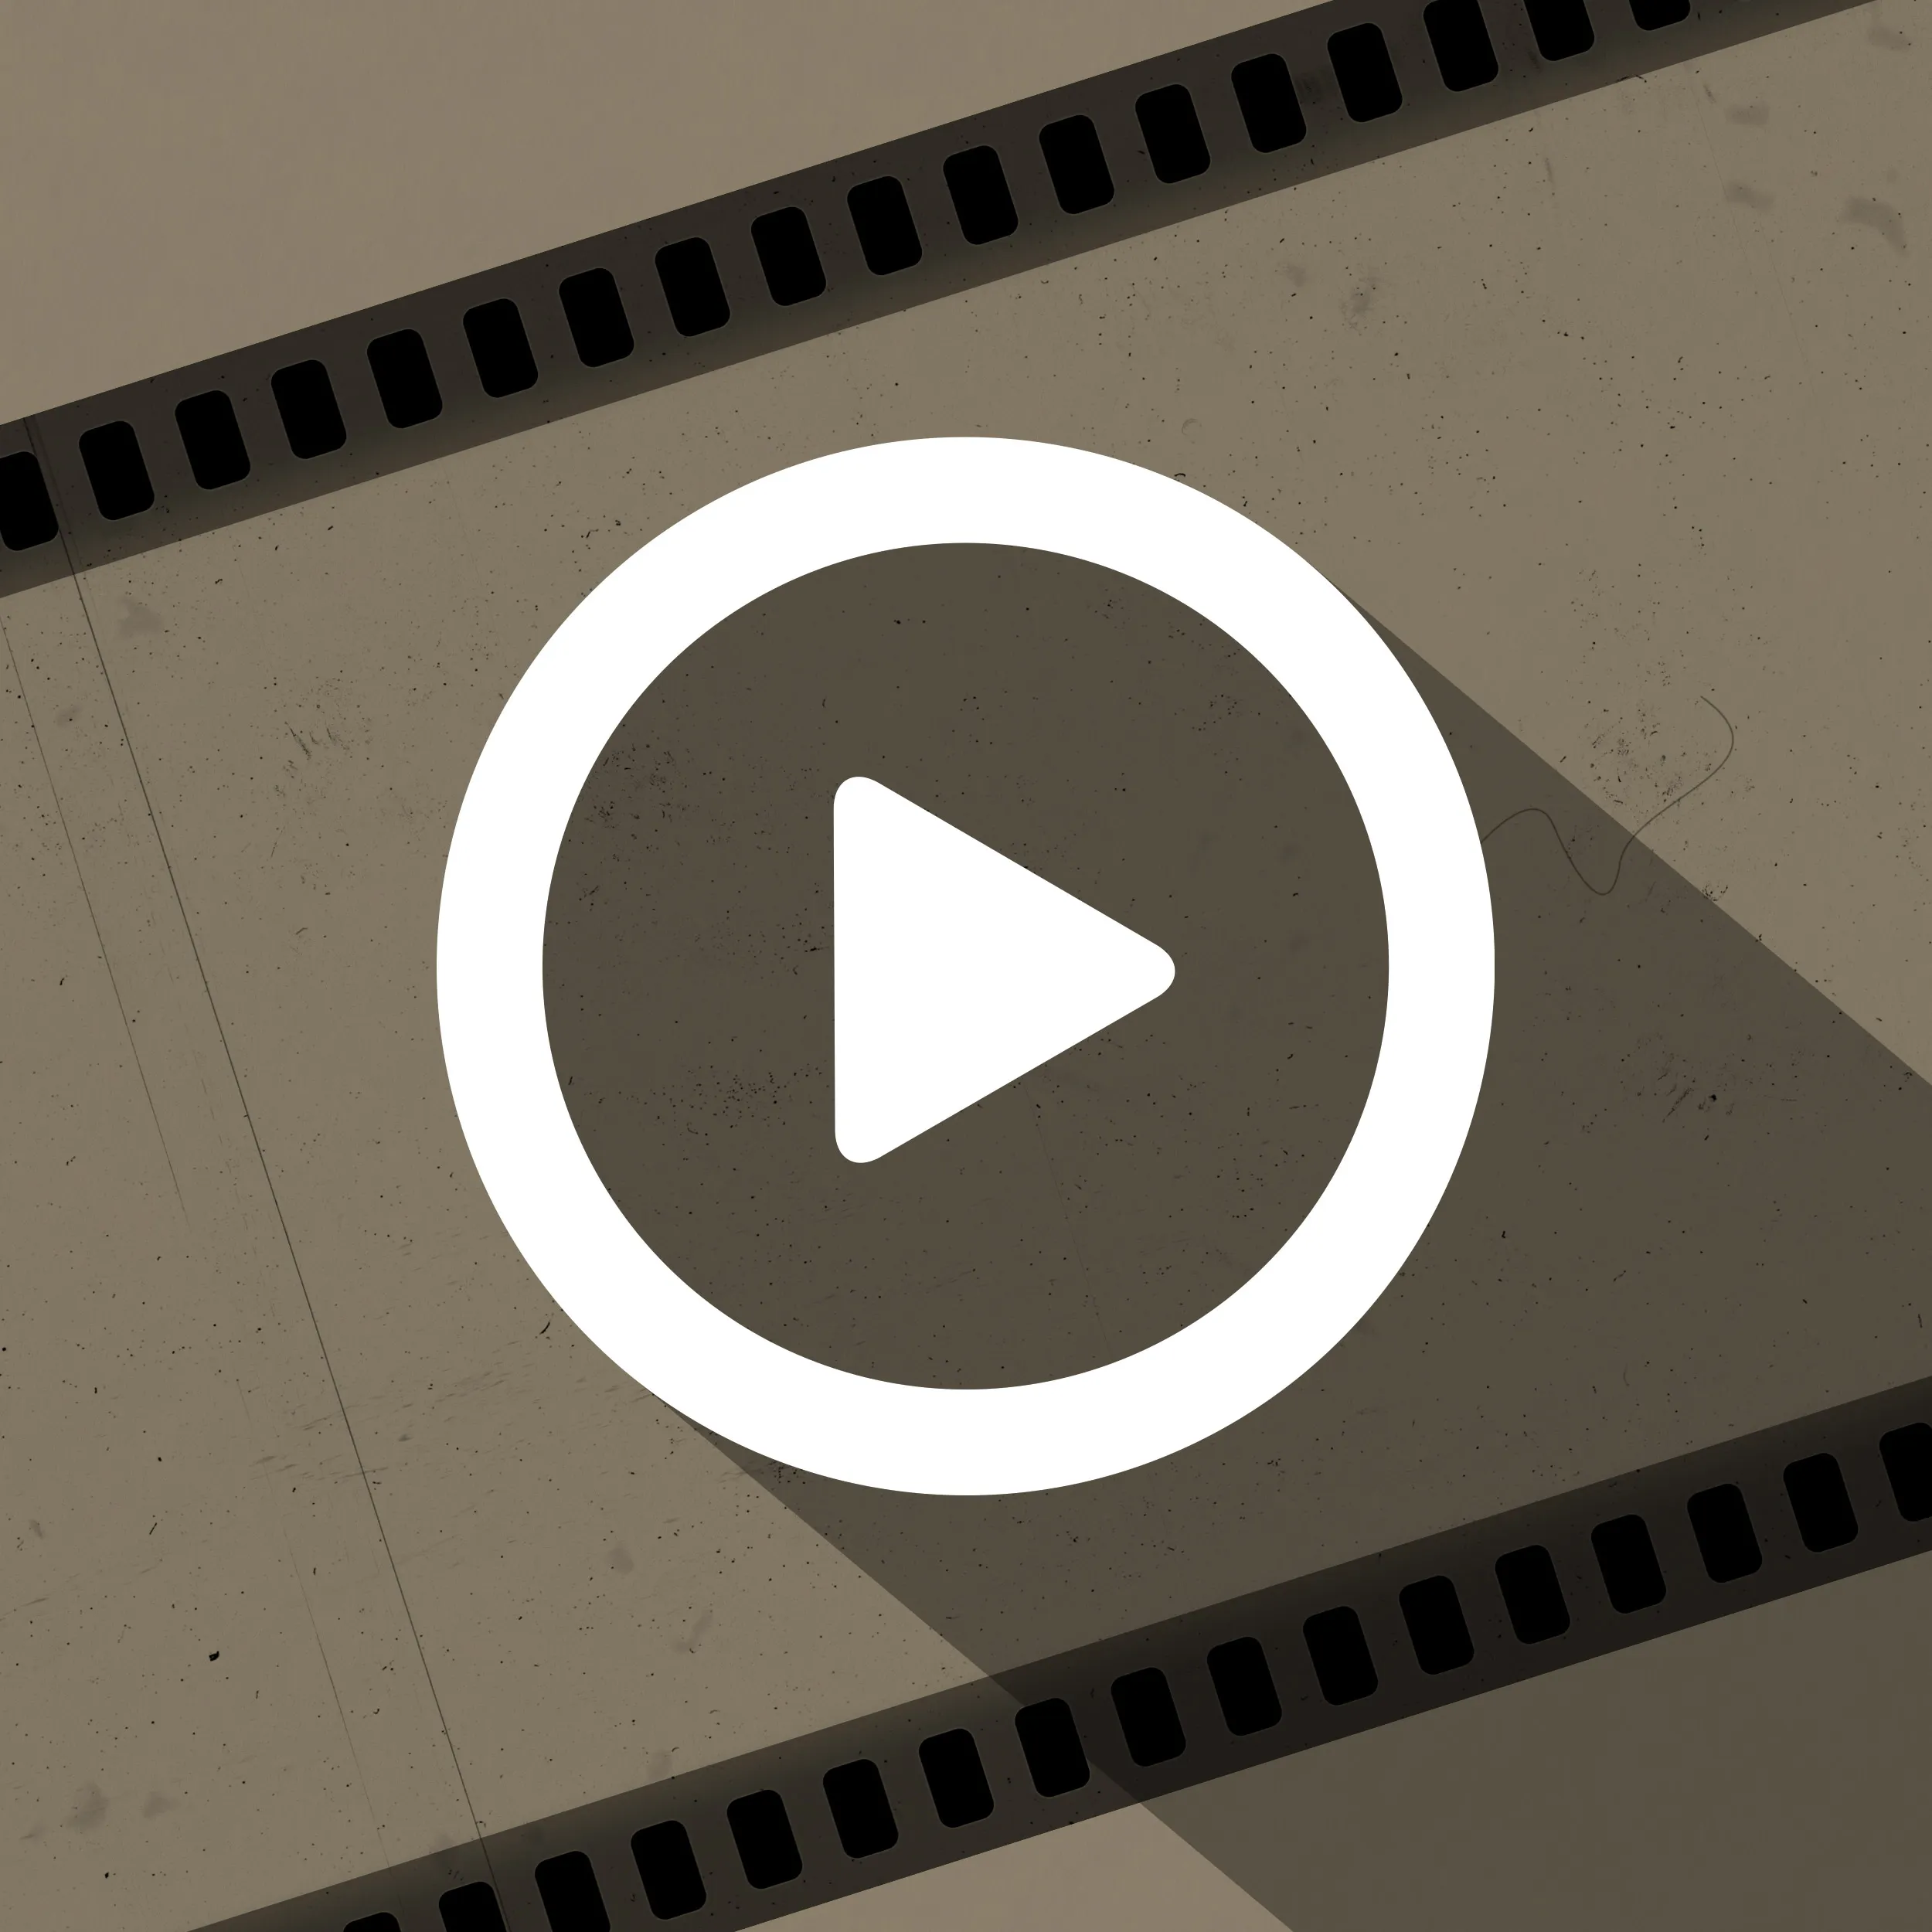 Mattscheibe & Filmrolle: Overlay-Effekte für alt wirkende Videos